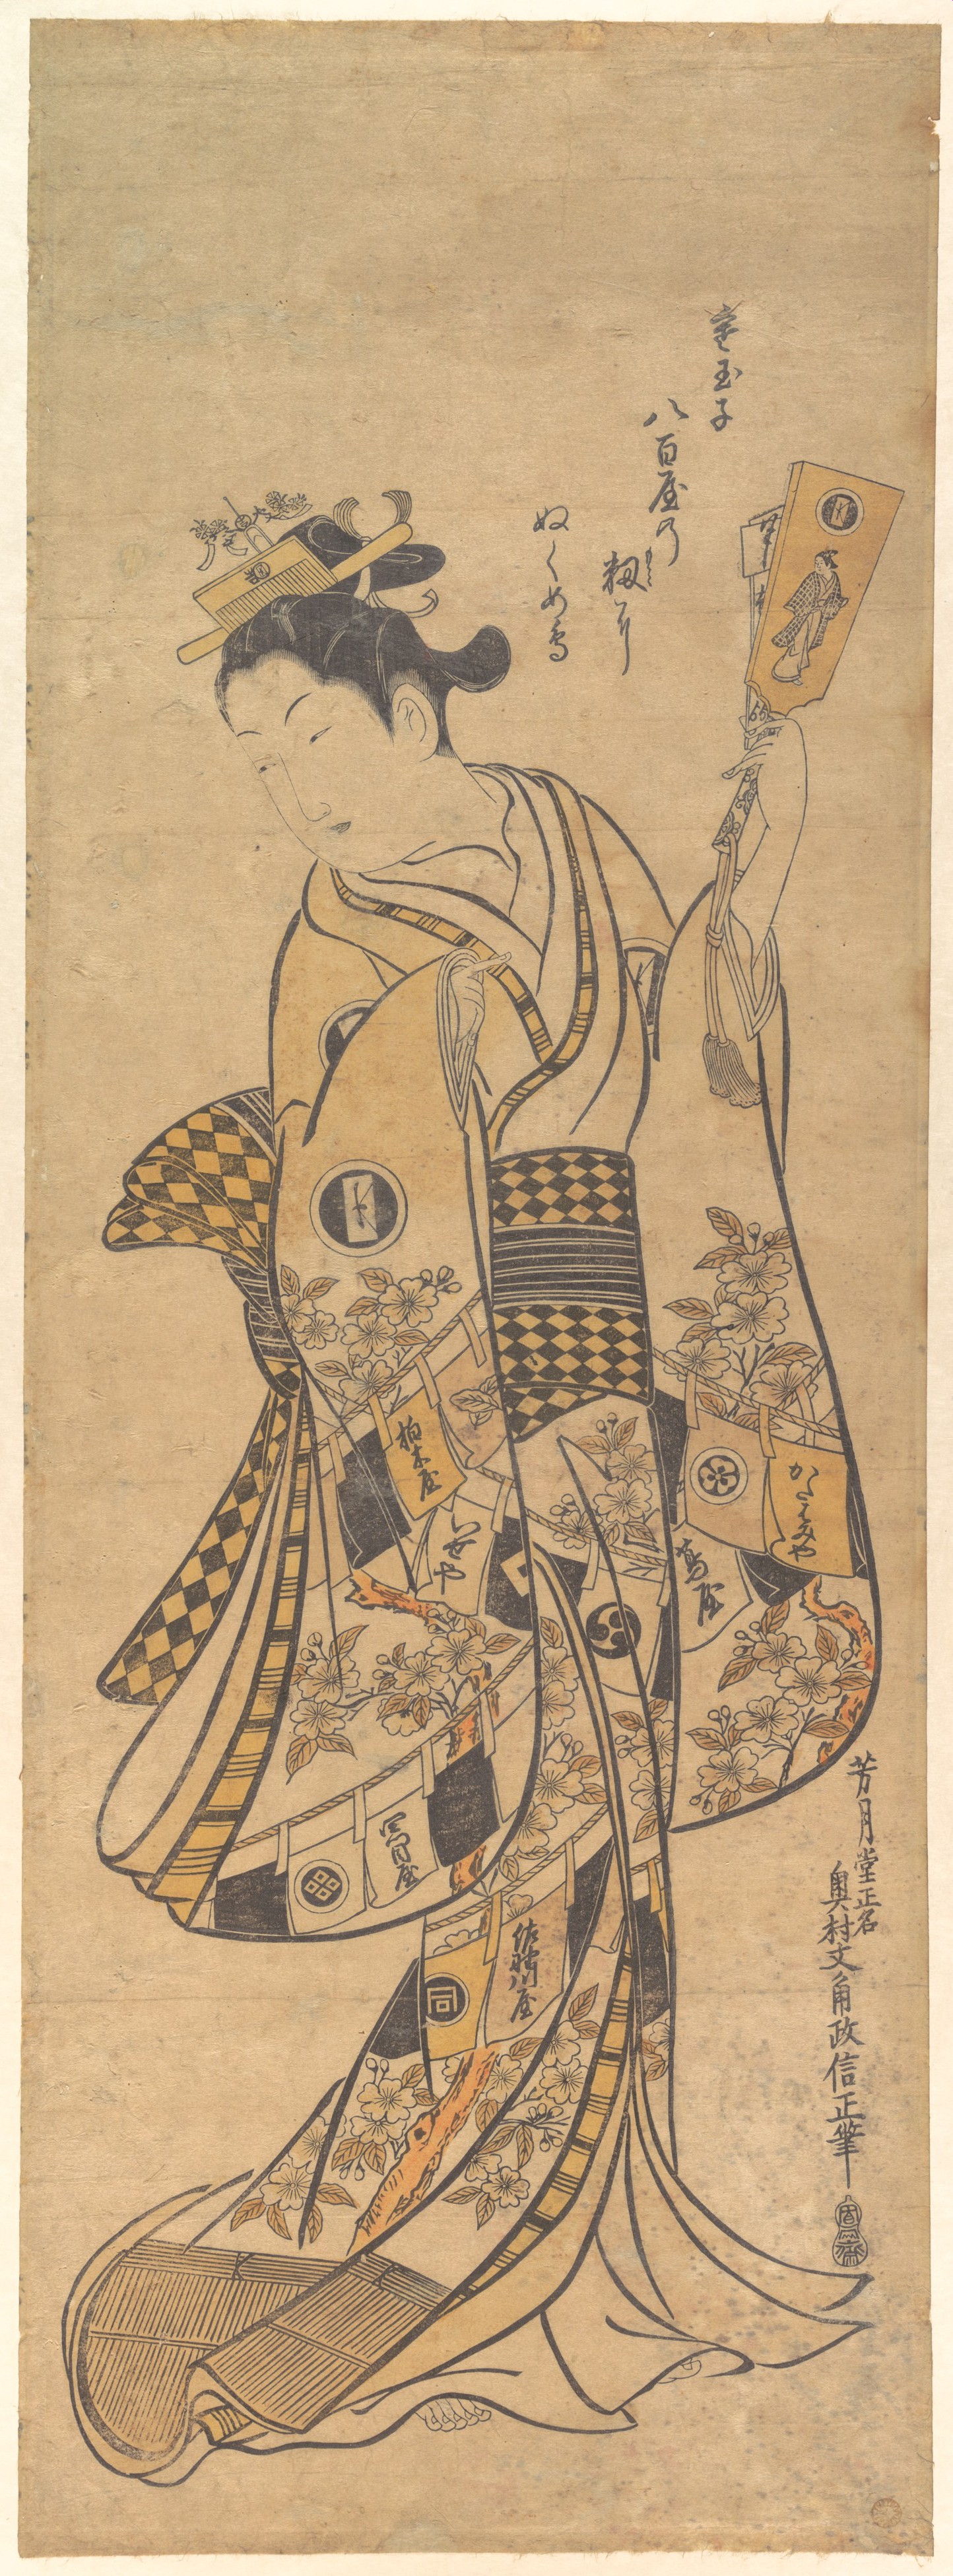 Okumura Masanobu Artworks collected in Metmuseum